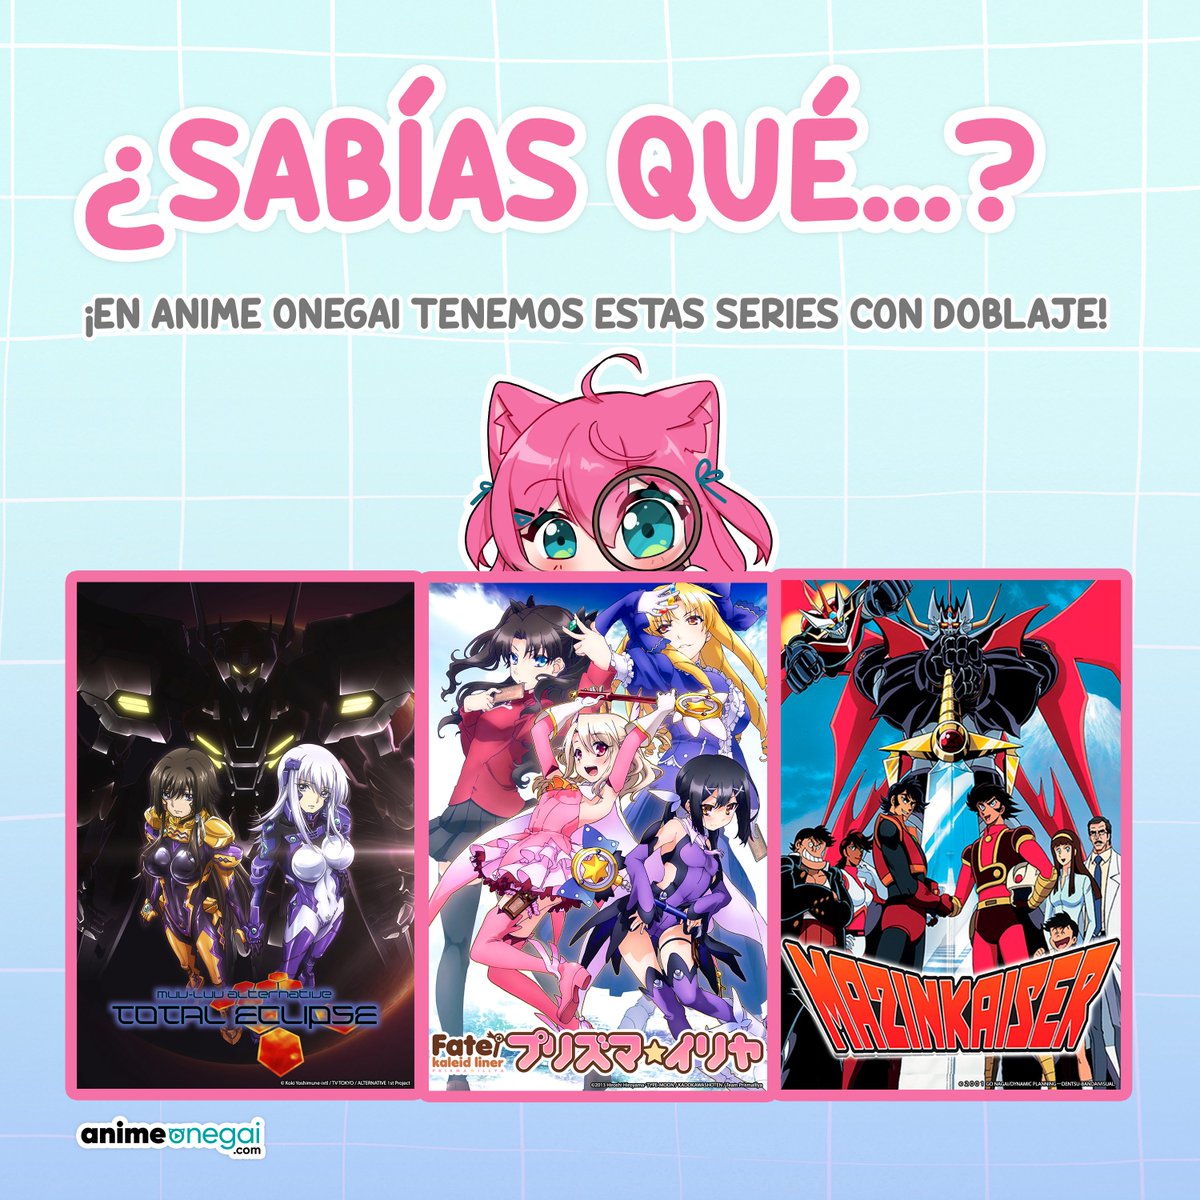 Las series de anime que siempre quisiste ver con DOBLAJE disponibles en animeonegai.com 💖
#comunidadonegai #doblaje #serieanime #anime #clasicos #animelovers